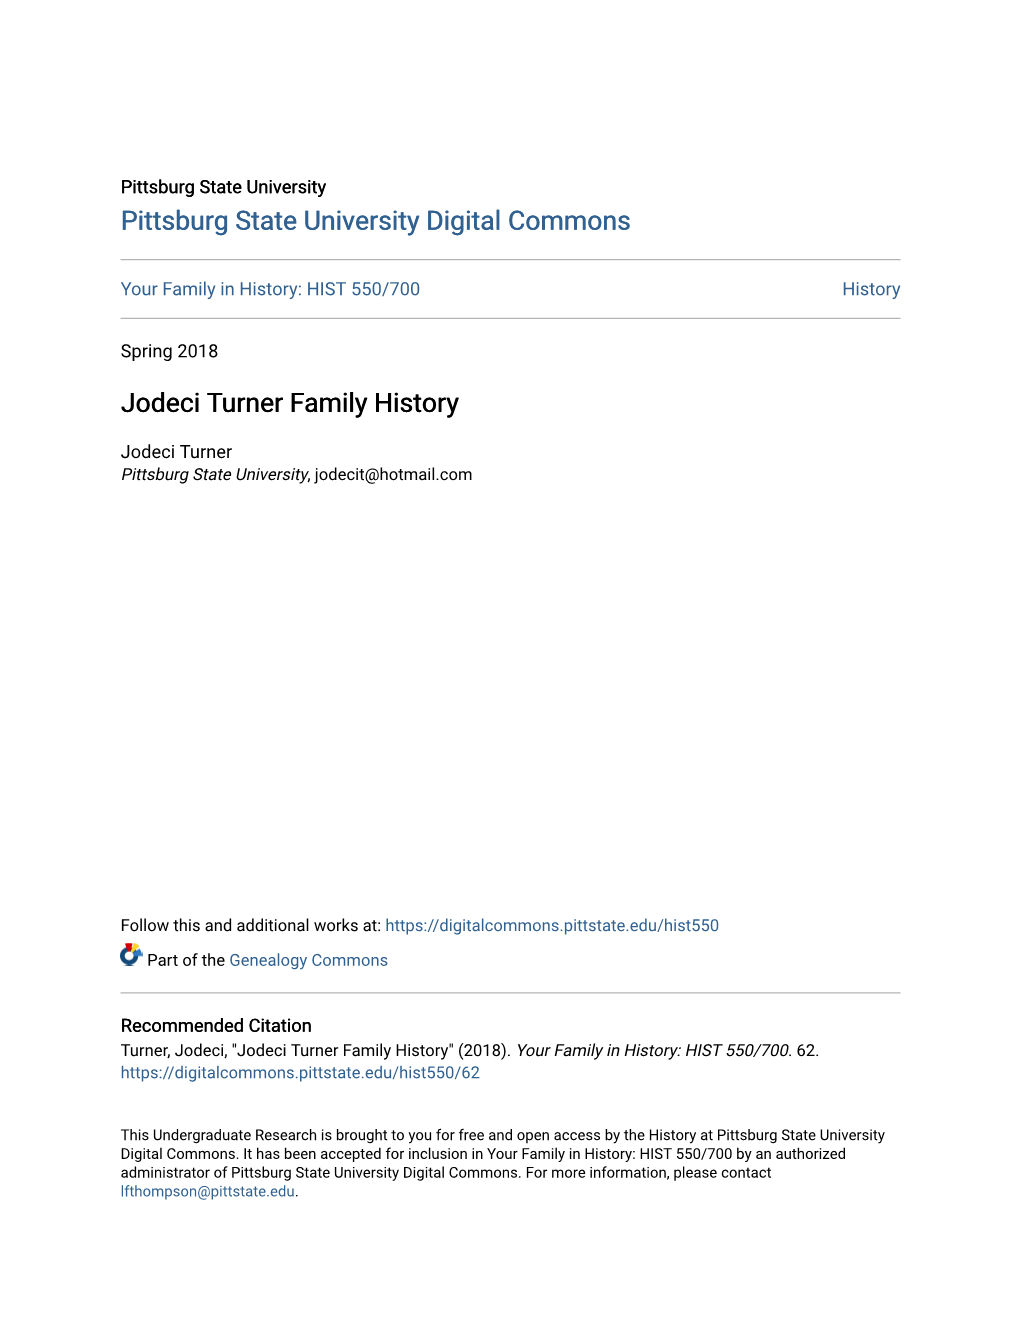 Jodeci Turner Family History